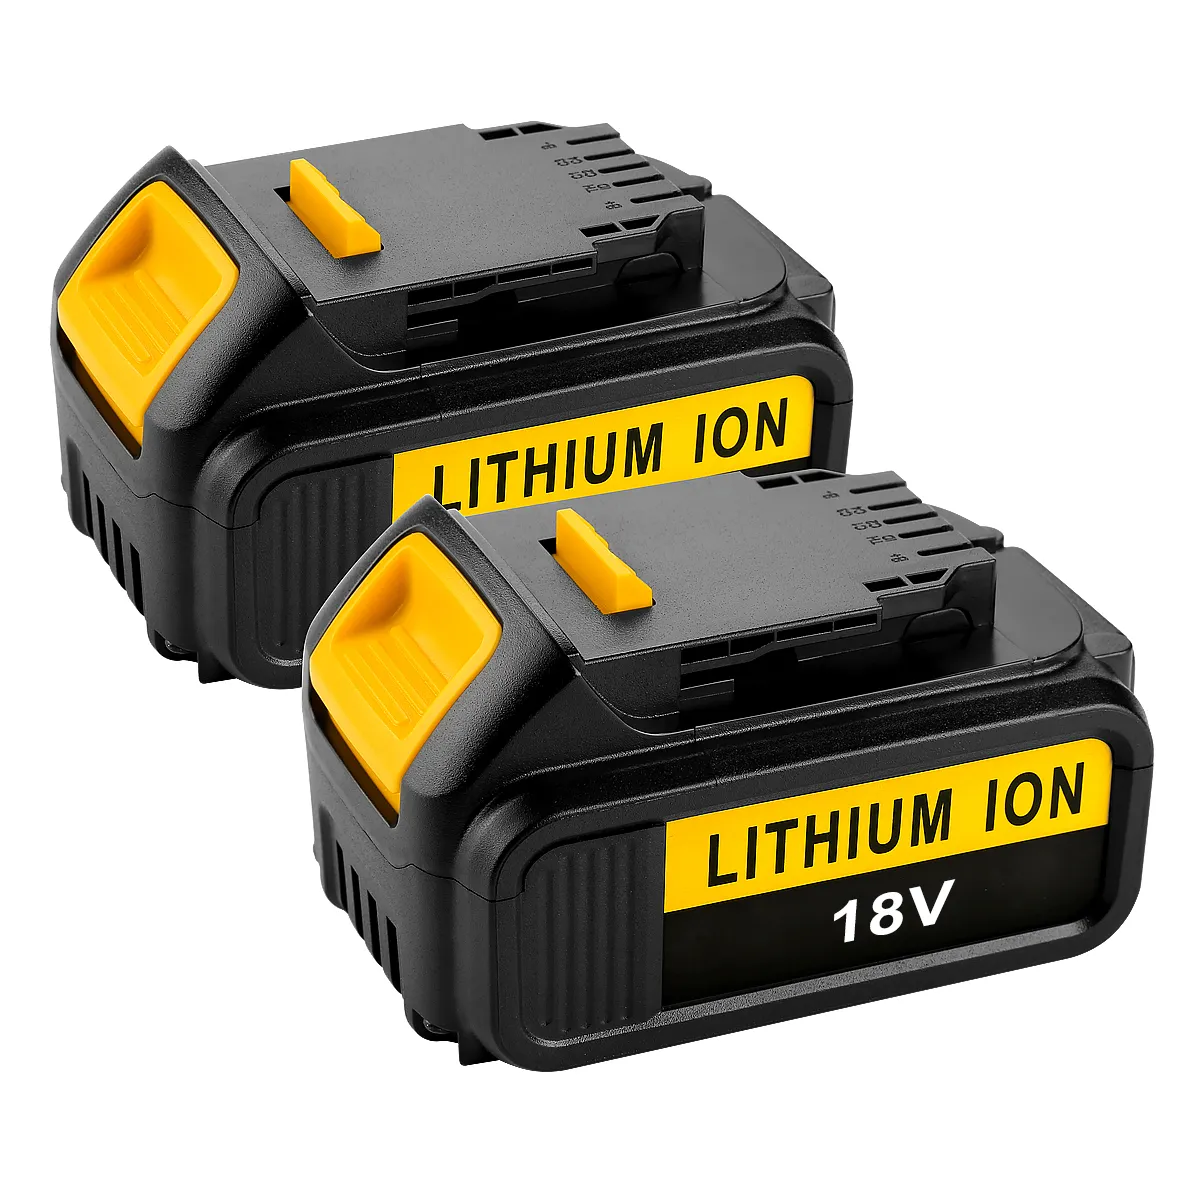 Аккумуляторная литий-ионная батарея DCB200, 4,0 Ач, 18 в/20 в, для дрелей Dewalt, DCB201, DCB204, DCB205